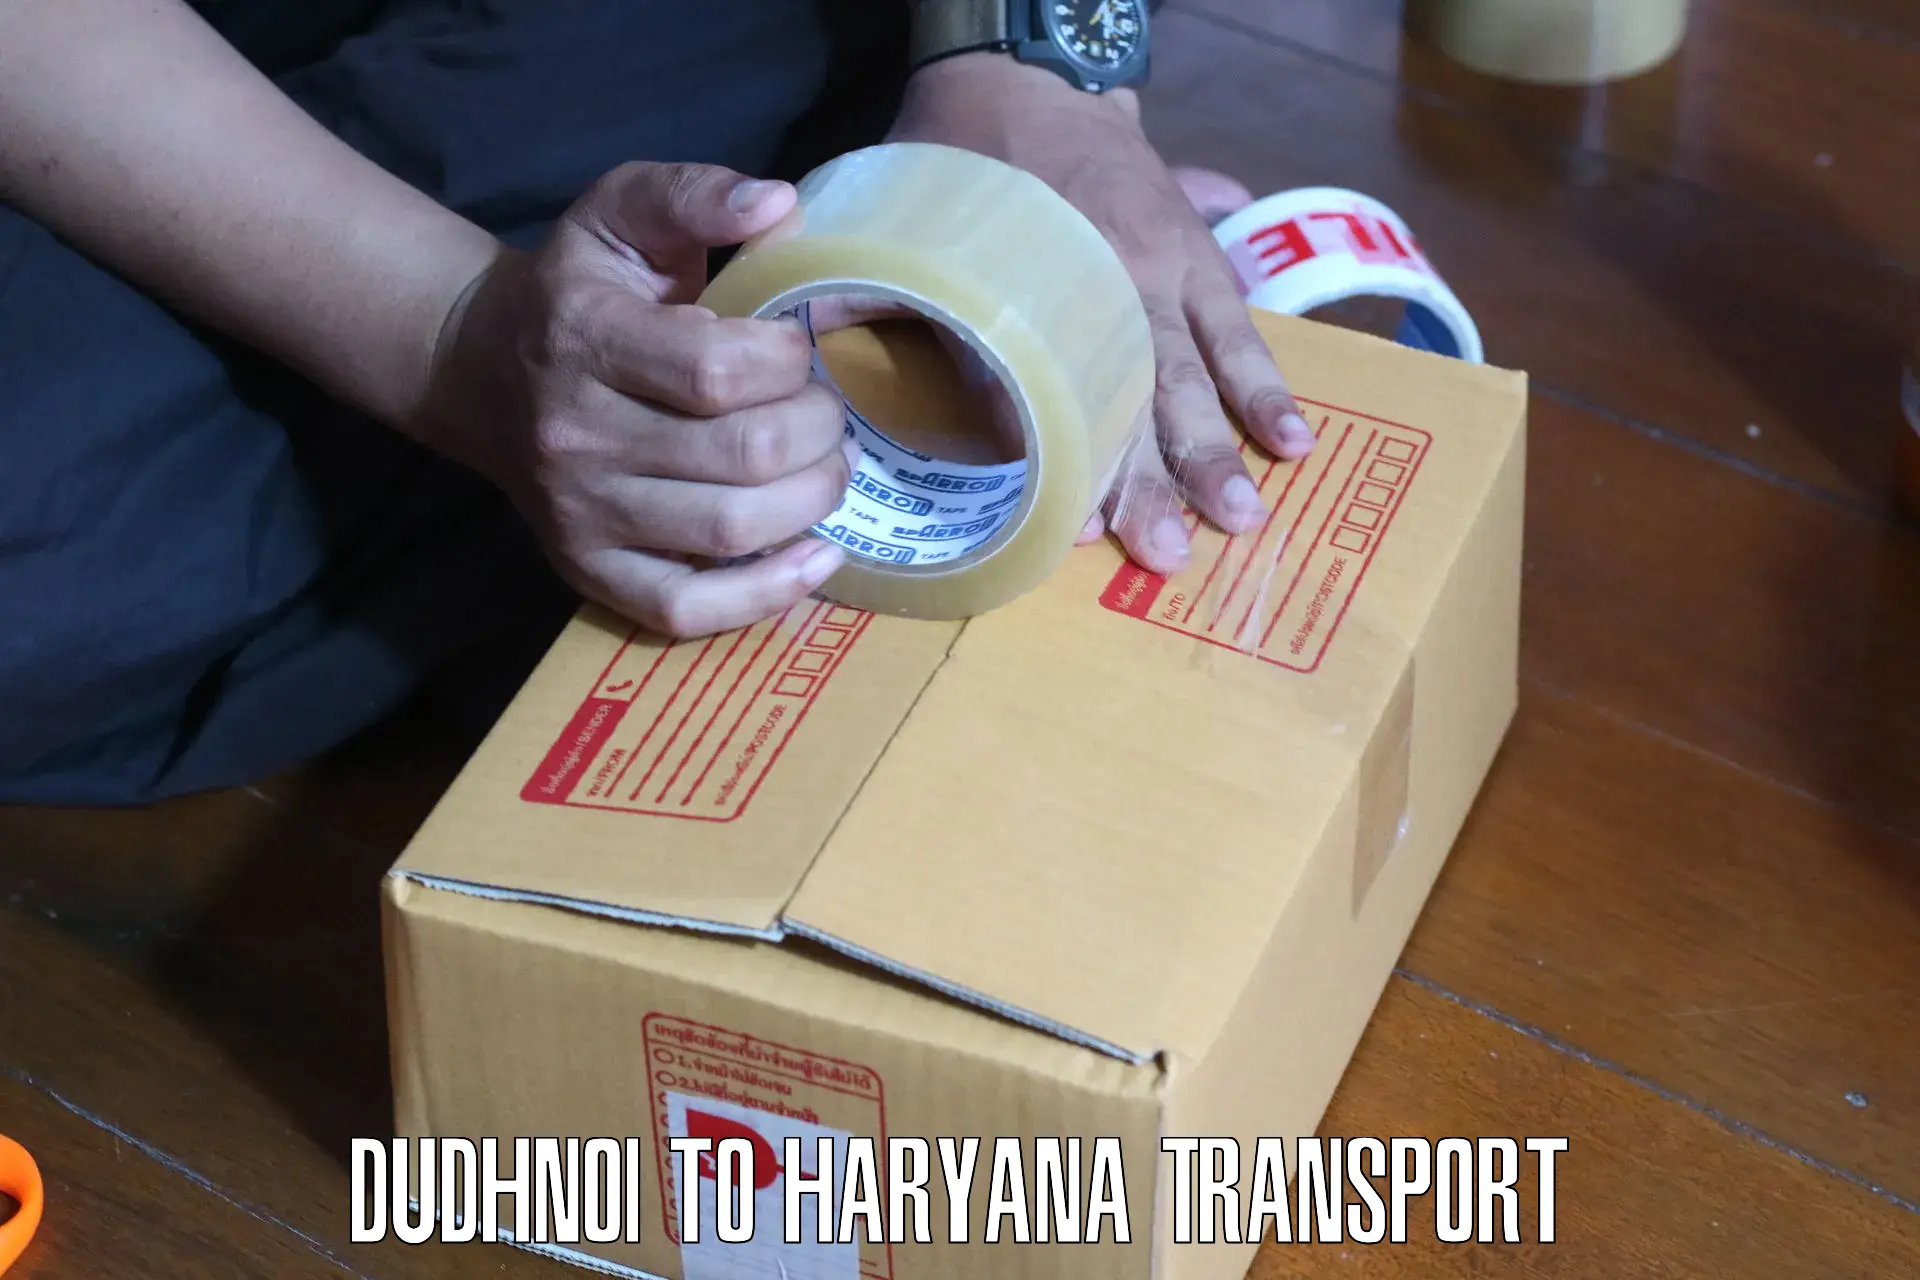 Shipping partner Dudhnoi to Karnal